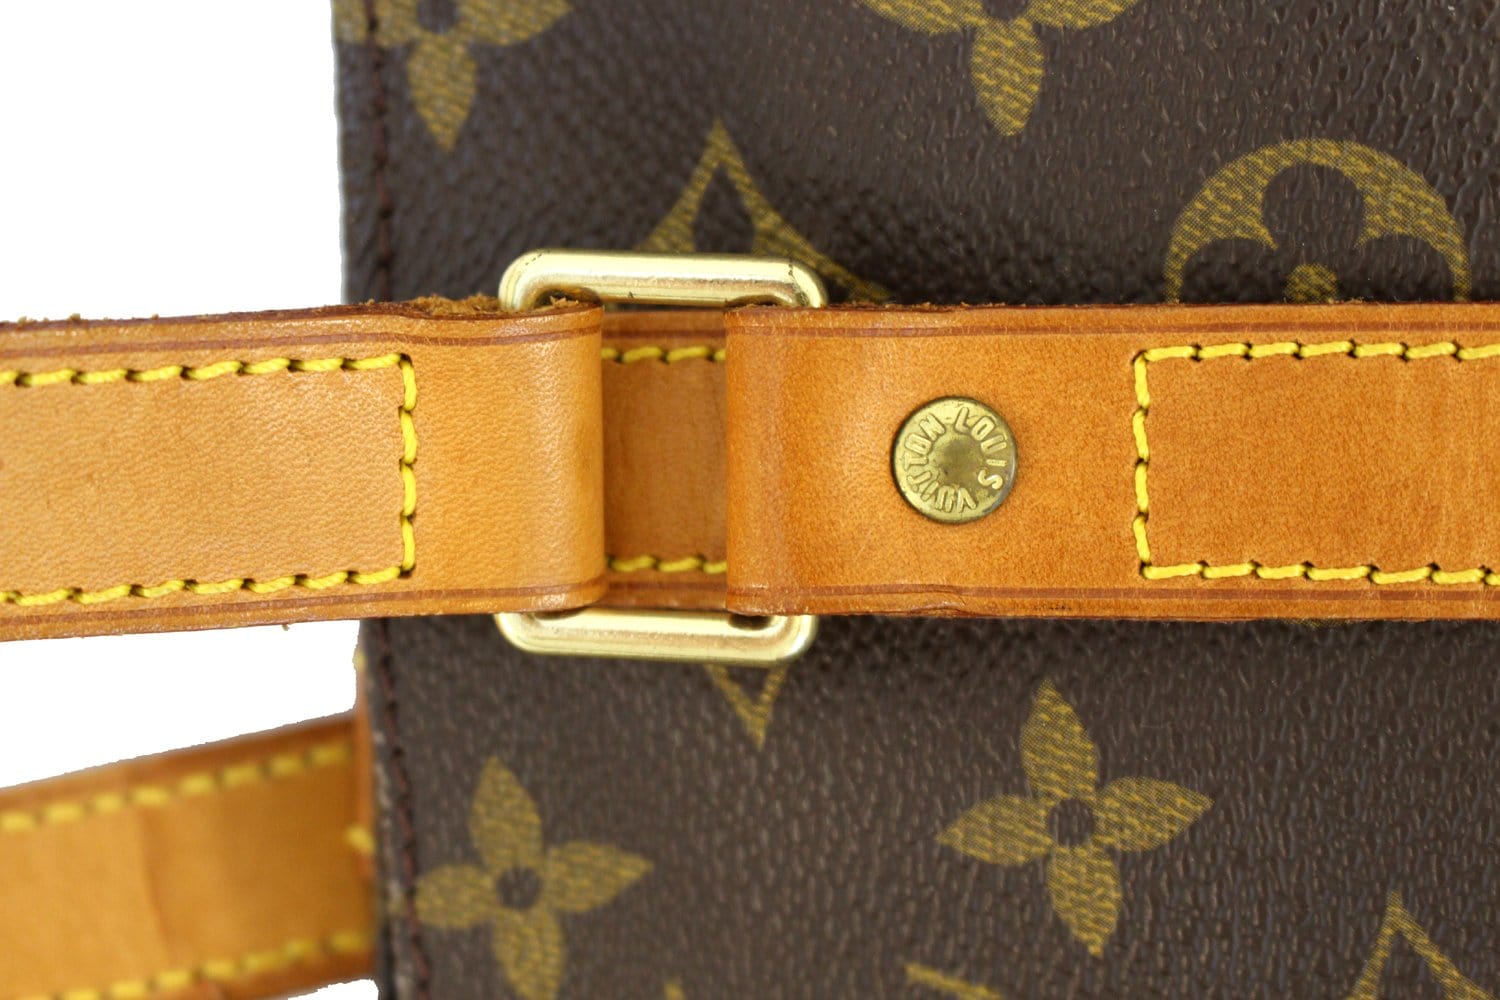 Discontinued Bag #7: Louis Vuitton Monogram Sac Shopping Large